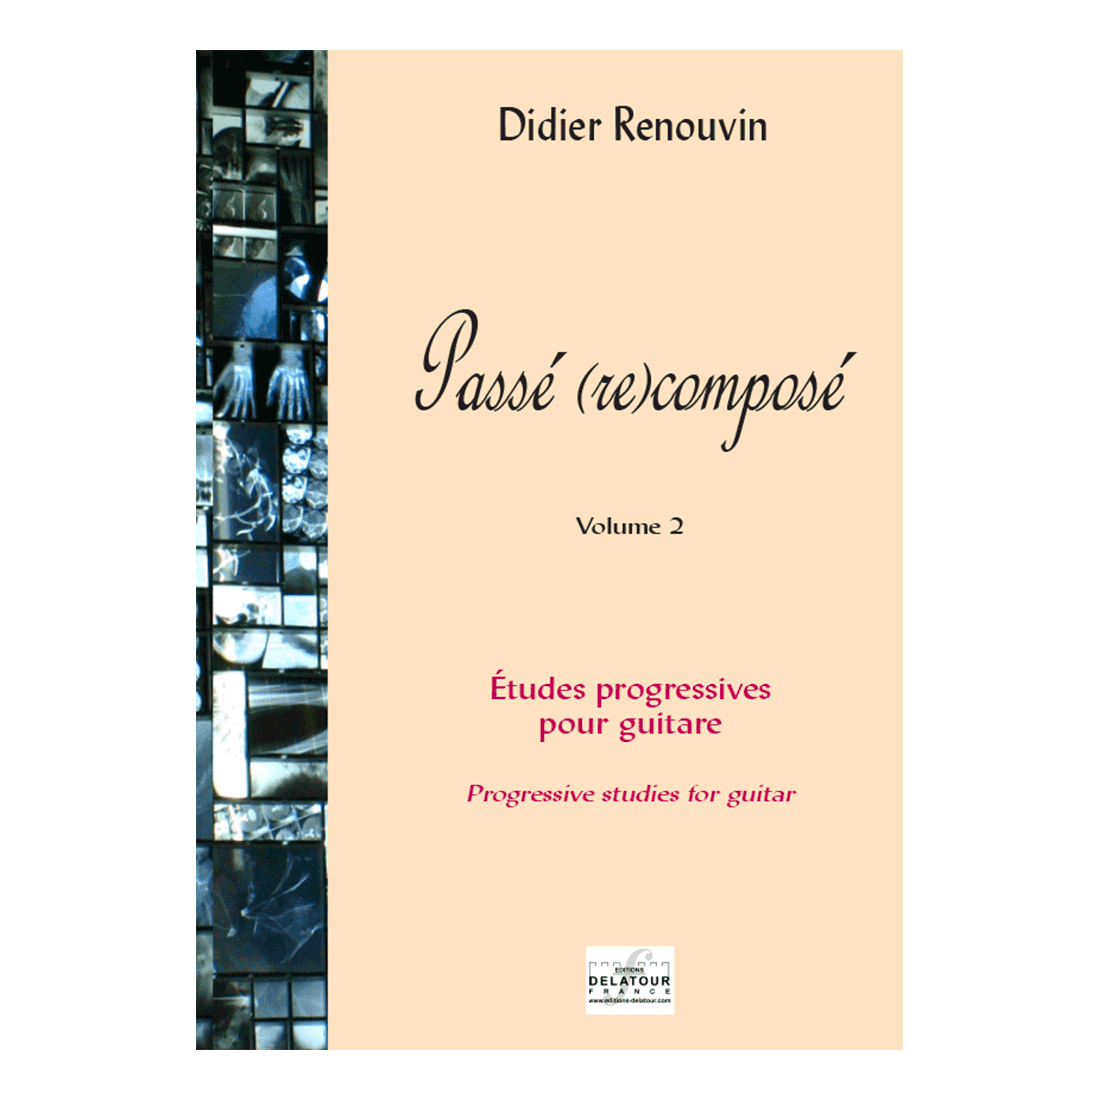 Passé (re)composé - Progressive Studien für Gitarre band 2